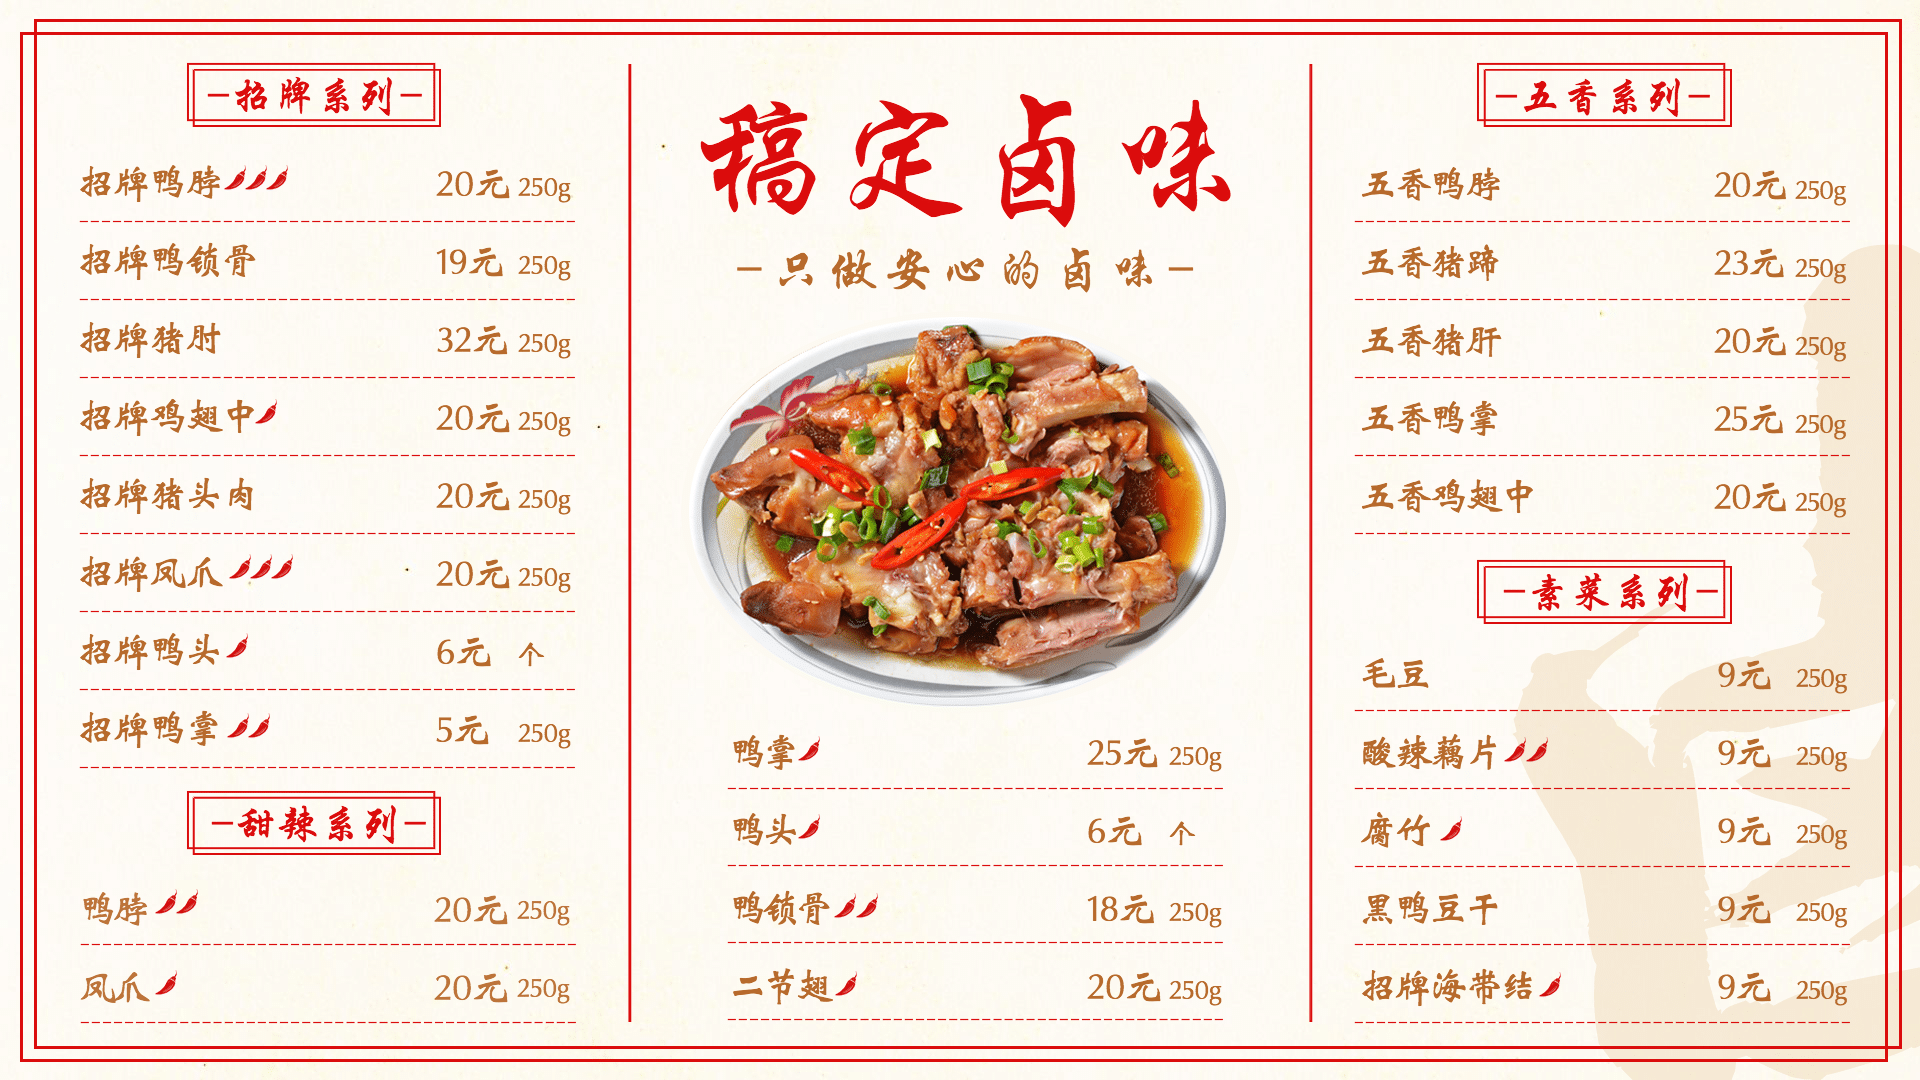 ﻿潮汕牛肉店/火锅店 火锅店菜单 满座菜谱